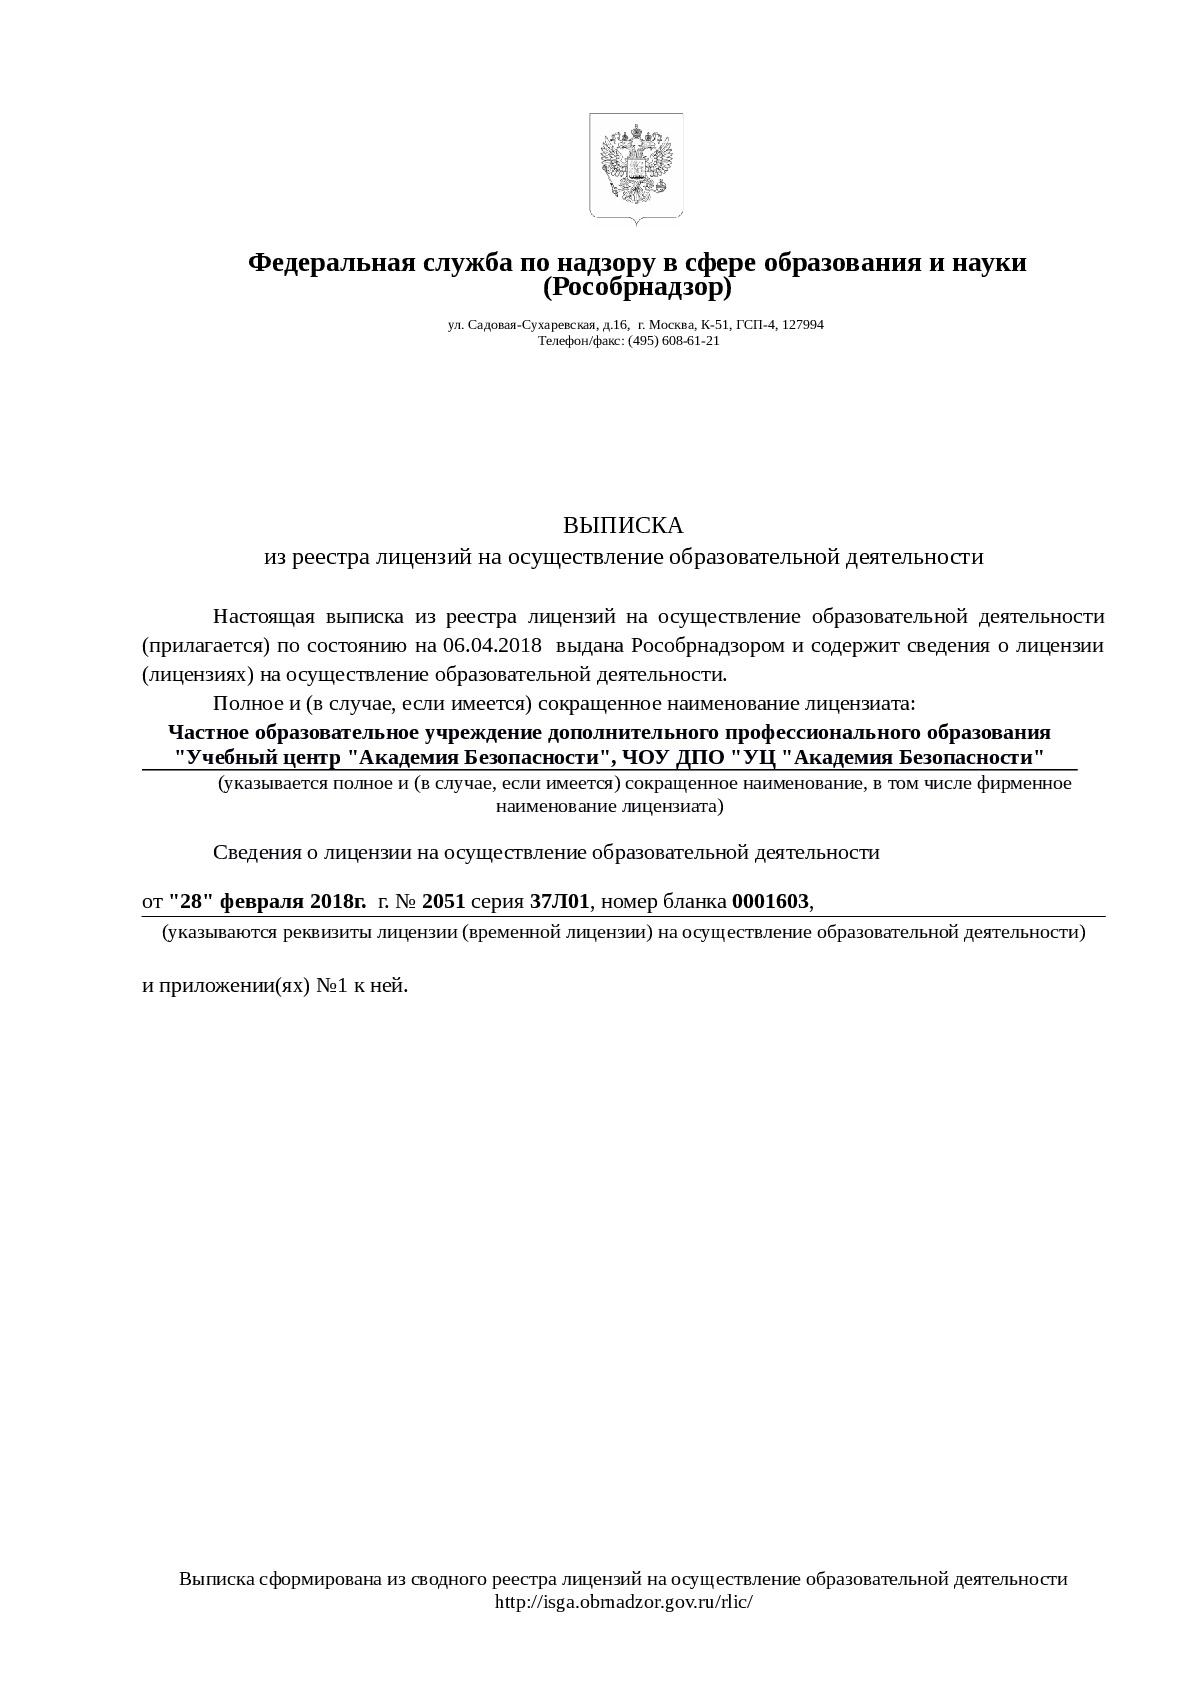 Выписка из реестра лицензий Рособрнадзора